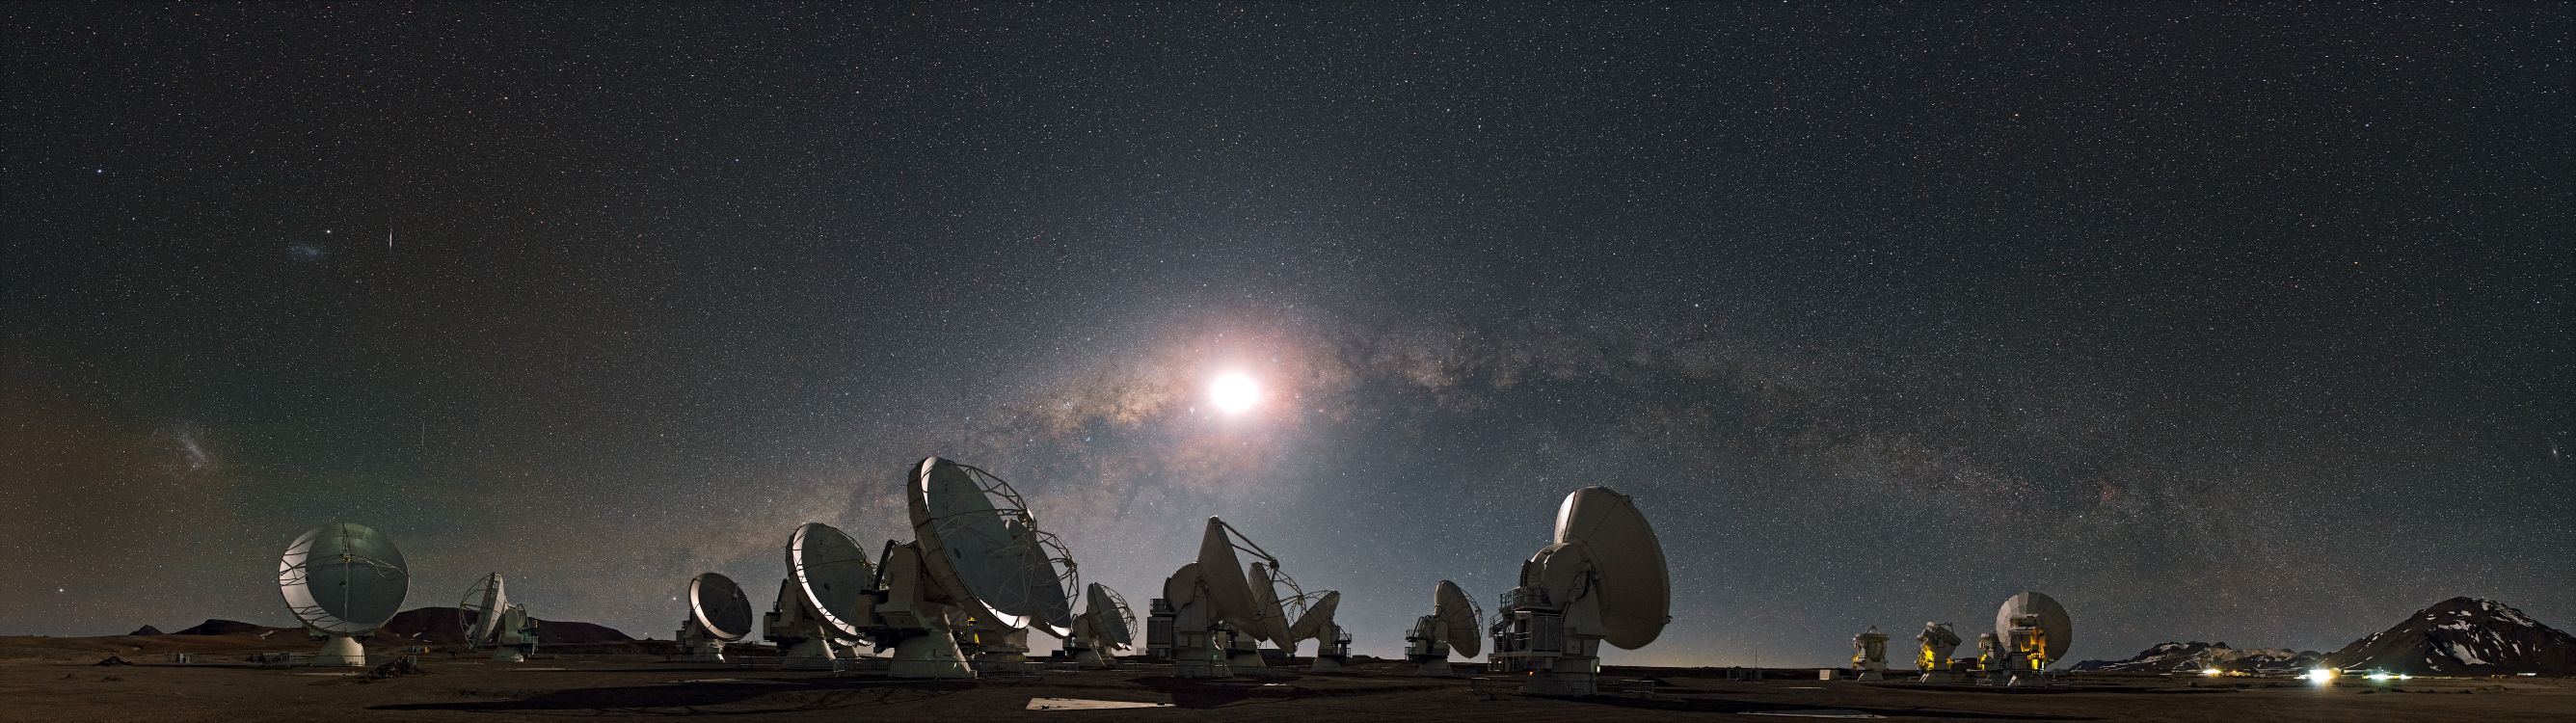 Обои Большой Массив Миллиметра Атакама, радиотелескоп, Астрономия, телескоп, астрономический объект в разрешении 8214x2305